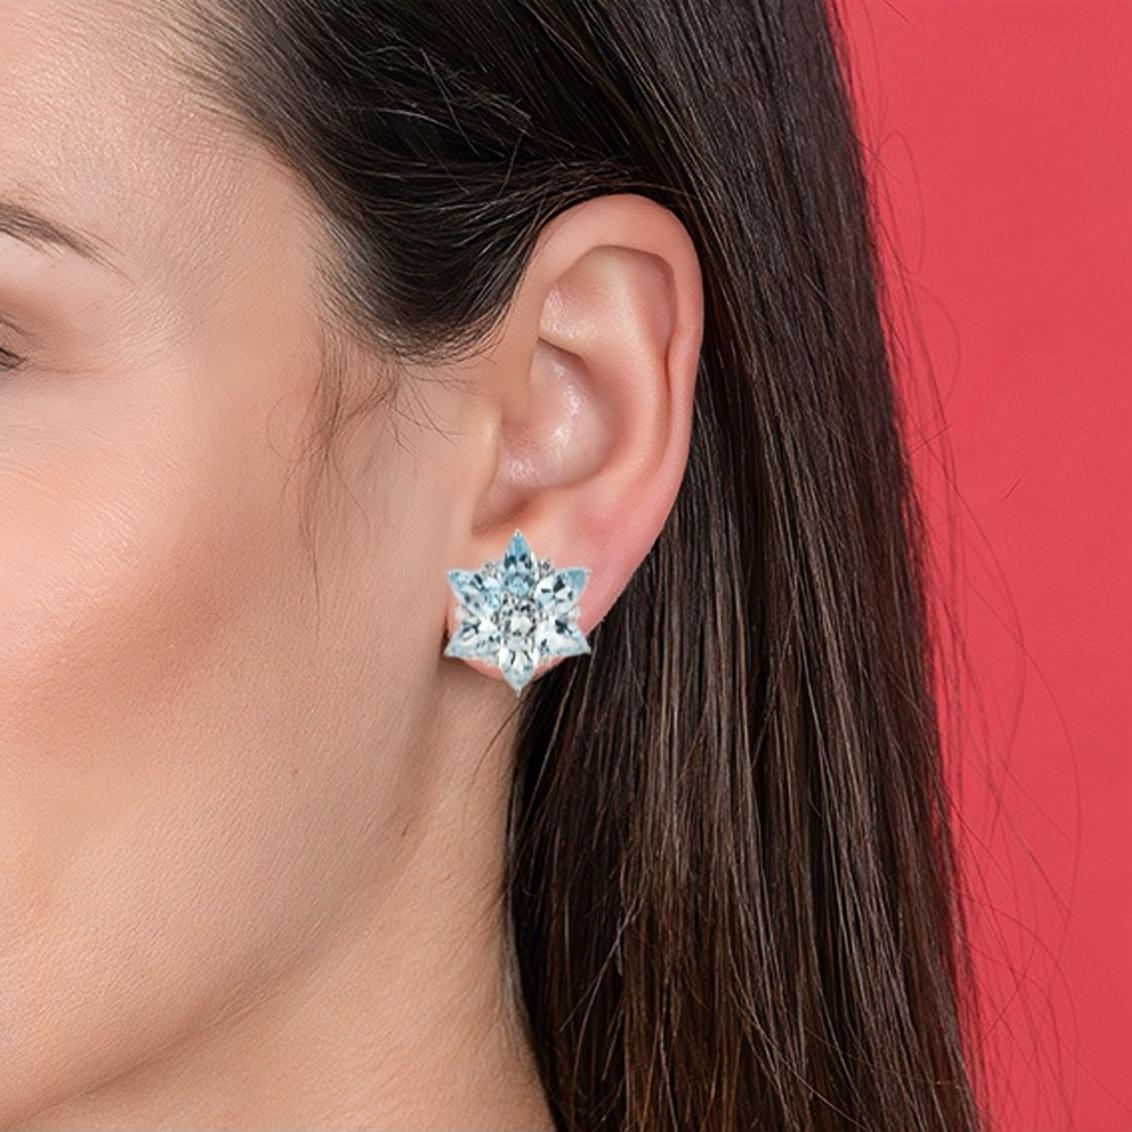 Entdecken Sie die Nina Zhou Ohrringe mit 4,80 Karat Aquamarin und 0,18 Karat Diamant in 14k Weißgold. Diese Ohrringe zelebrieren den Zauber der Jahreszeit und fangen die Essenz glitzernder Schneeflocken in einem faszinierenden Design ein. Jeder